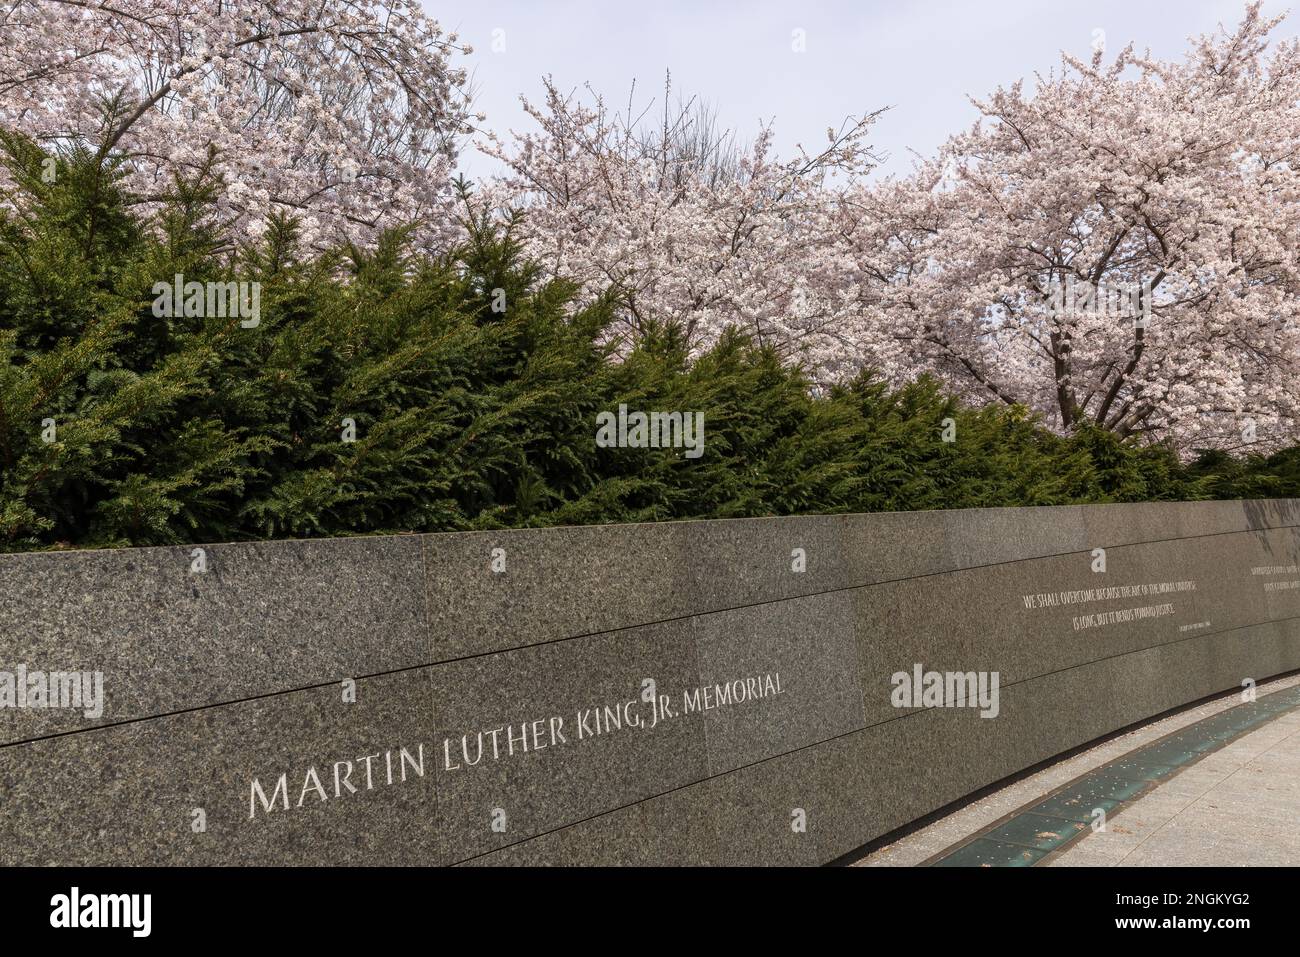 Inscription mur au printemps avec des fleurs de cerisier, Martin Luther King Jr Memorial, Washington, DC Banque D'Images